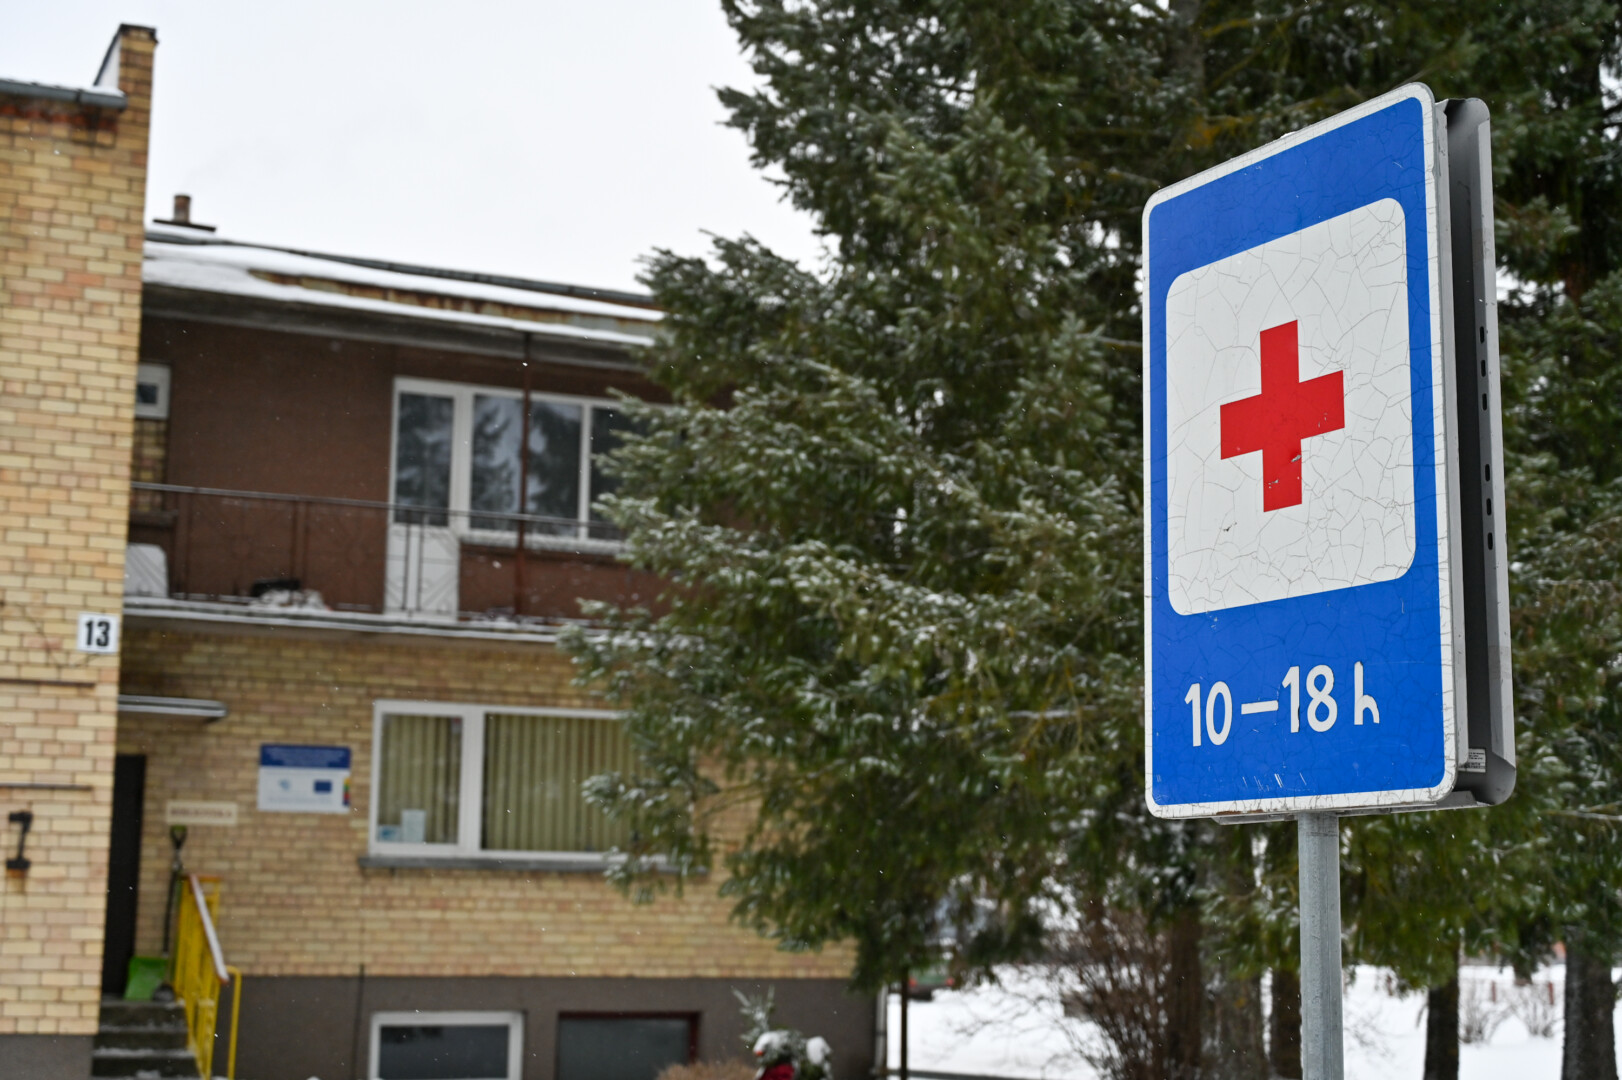 Panevėžio rajone per pastaruosius porą metų uždarius septynis medicinos punktus, dabar jų teliko vos penki.